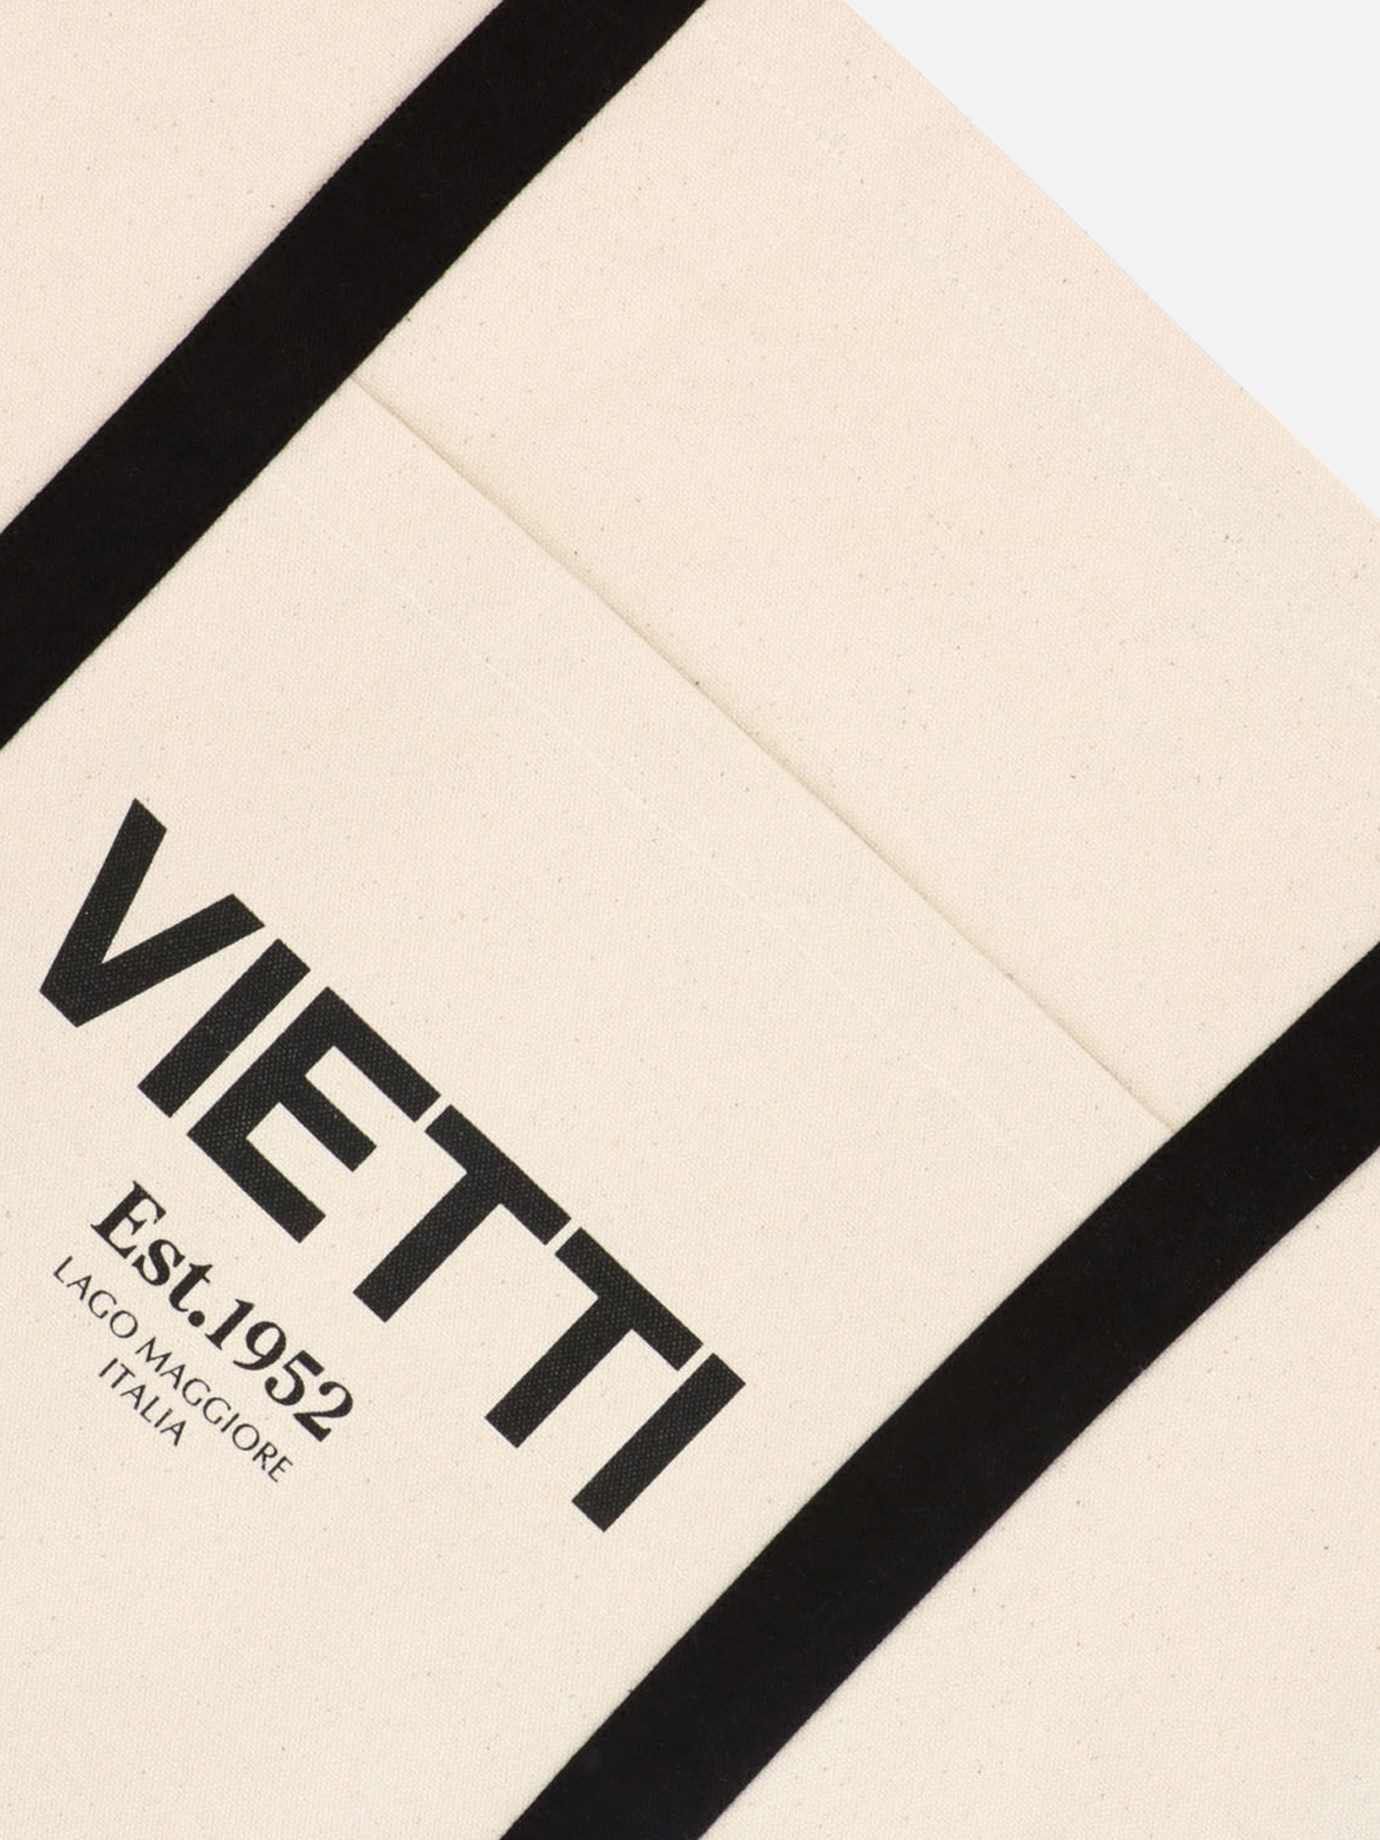  Vietti  shopperby VIETTI Merchandise - 2